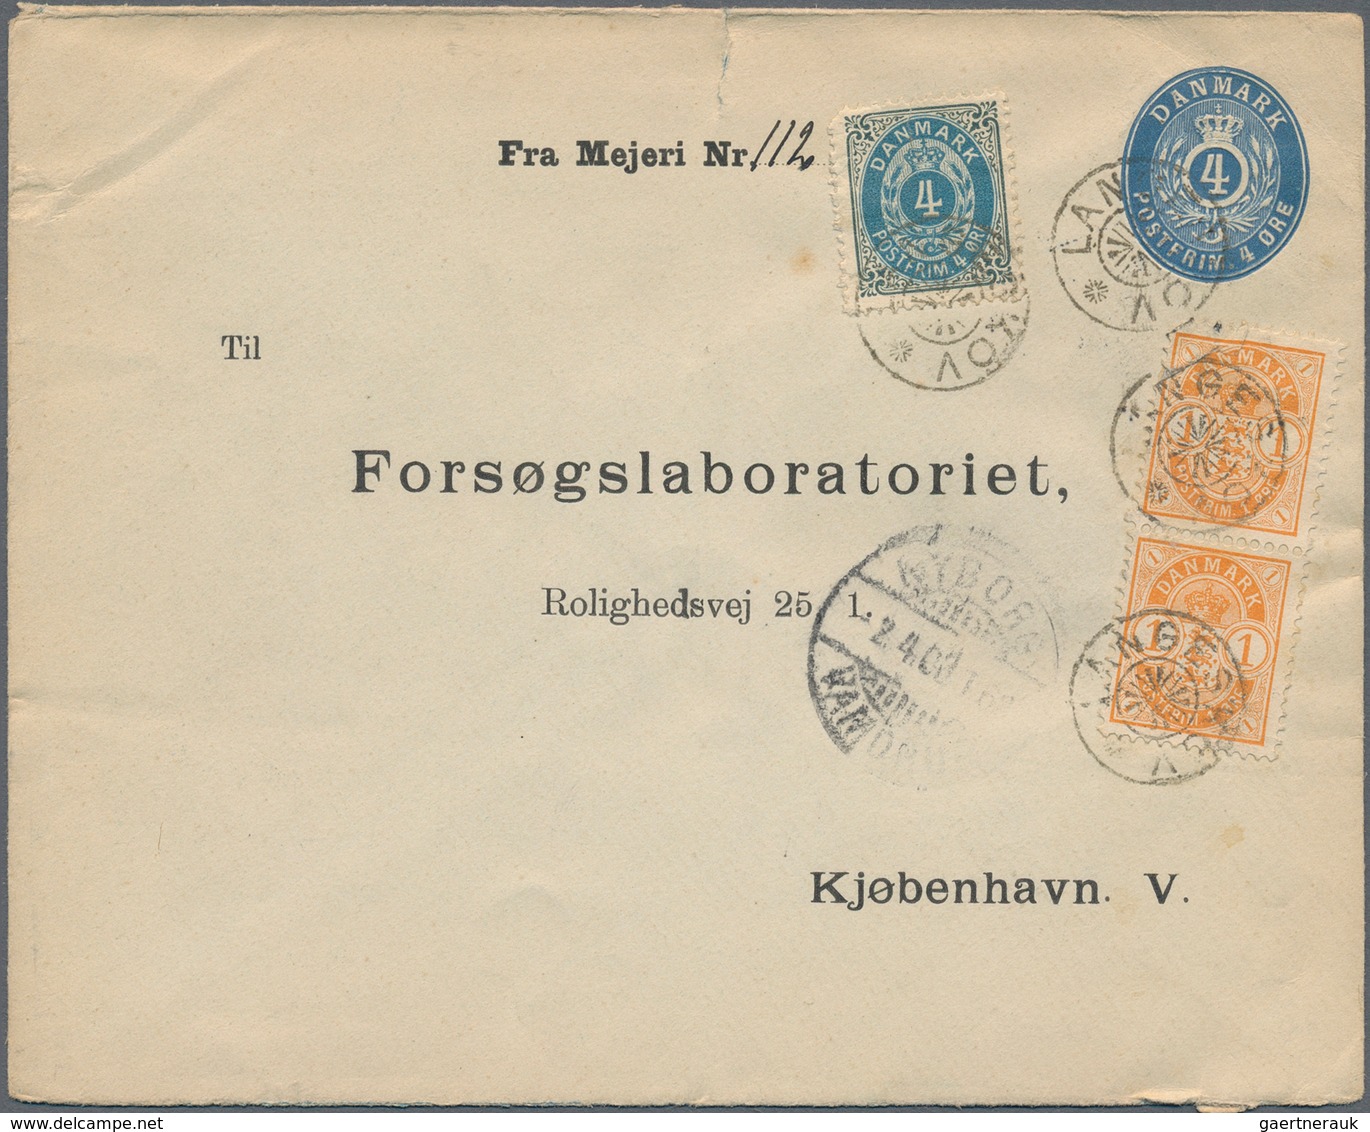 Dänemark: 1852-1980, vielseitiger Posten mit über 200 Briefen, Belegen und Ganzsachen, dabei auch be